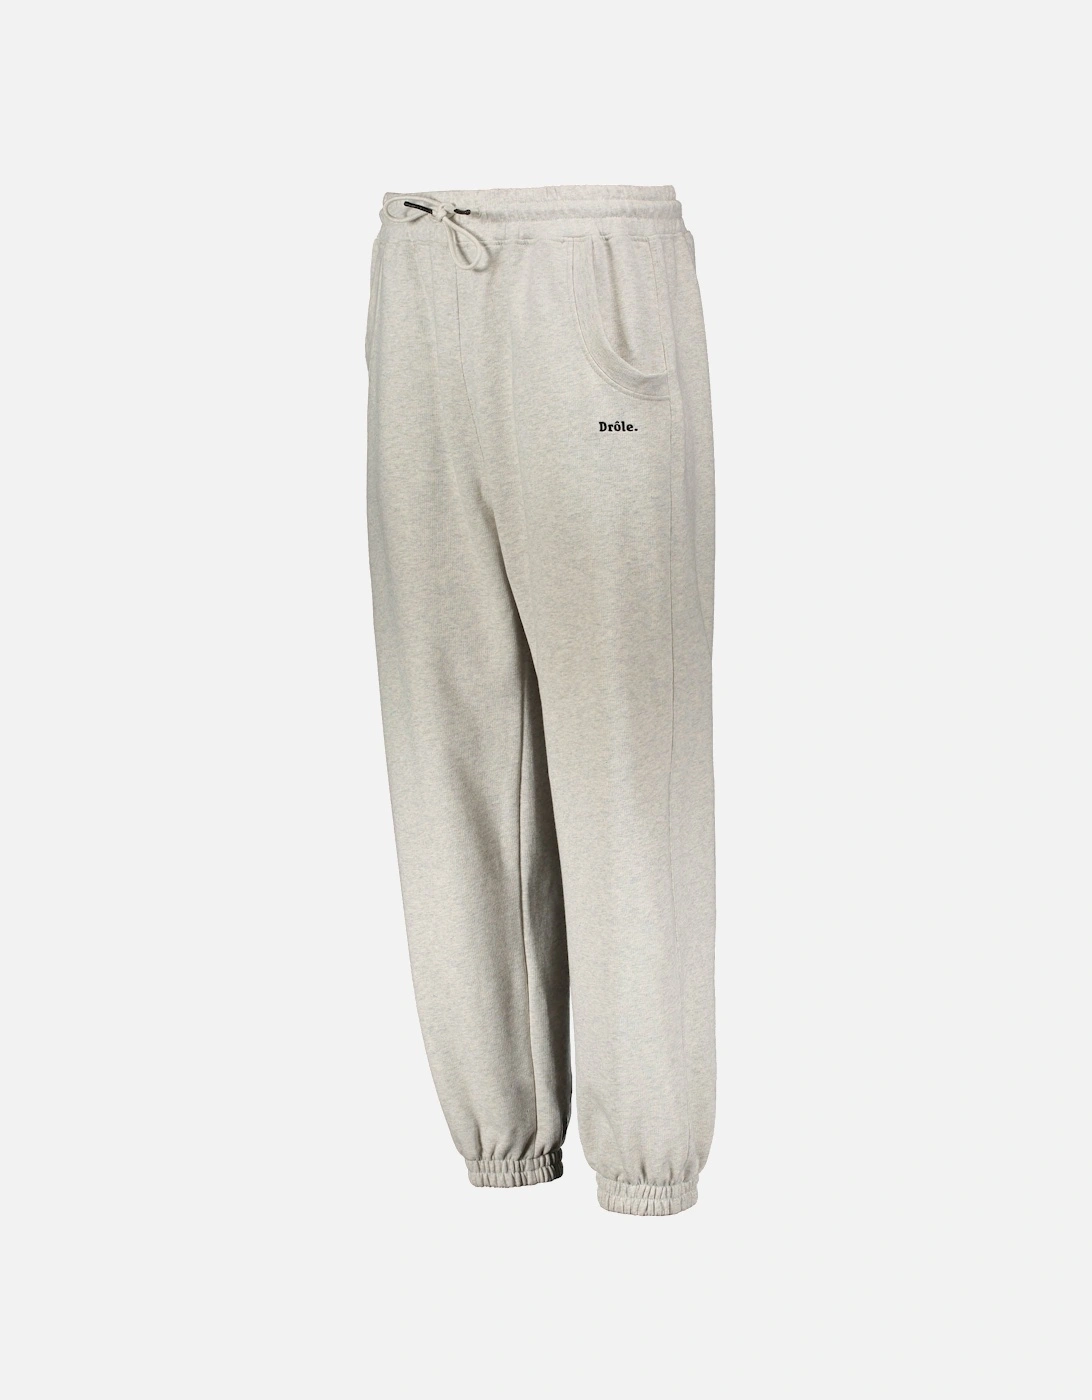 Le Survet Drole Sweatpants - Grey